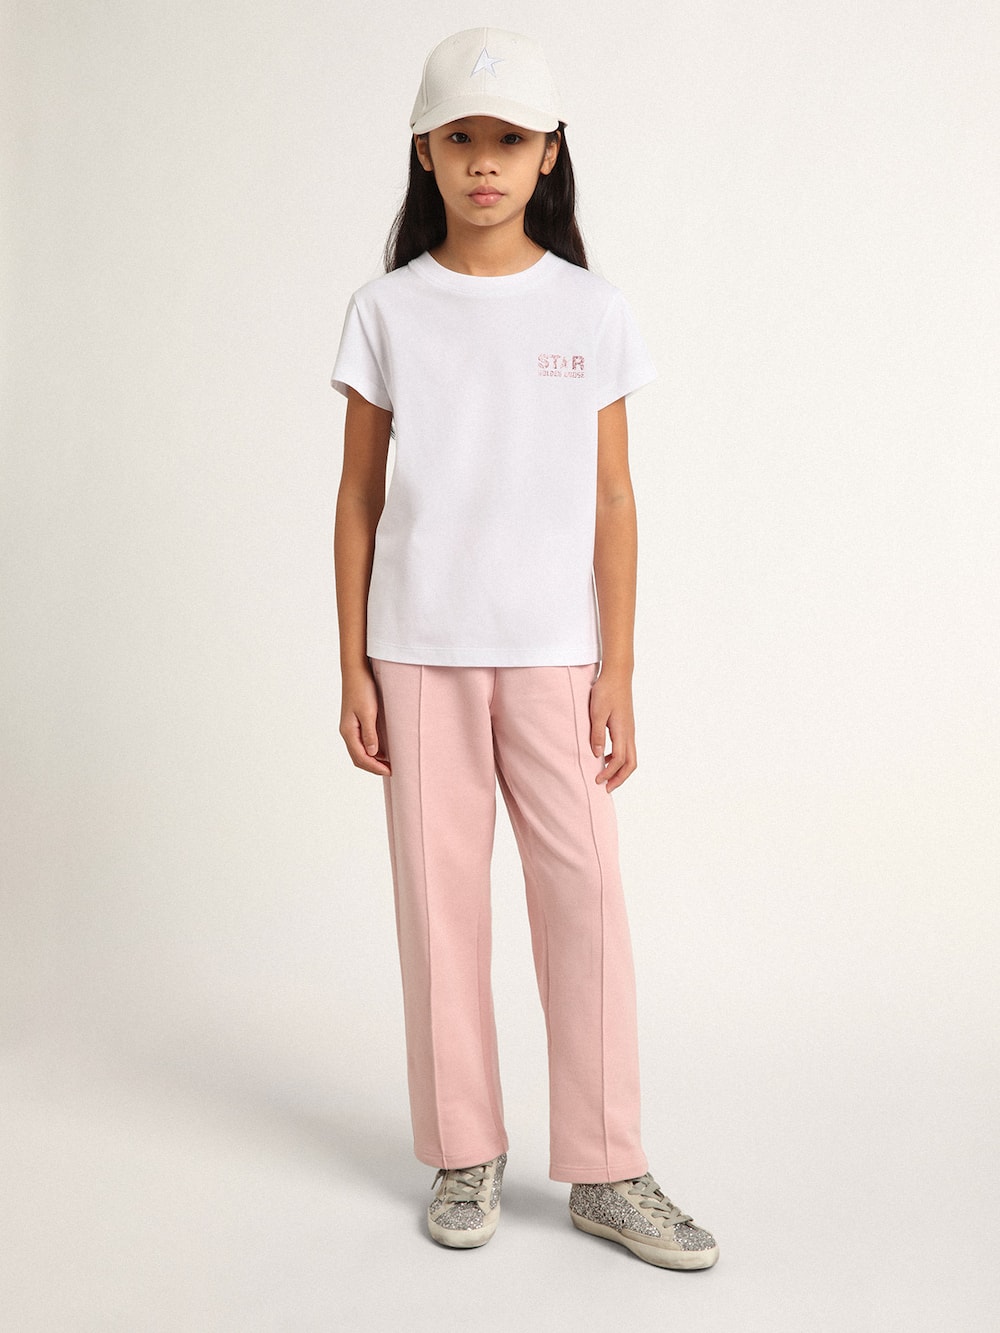 Golden Goose - Weißes Mädchen-T-Shirt mit Logo und Maxistern aus rosa Glitzer in 